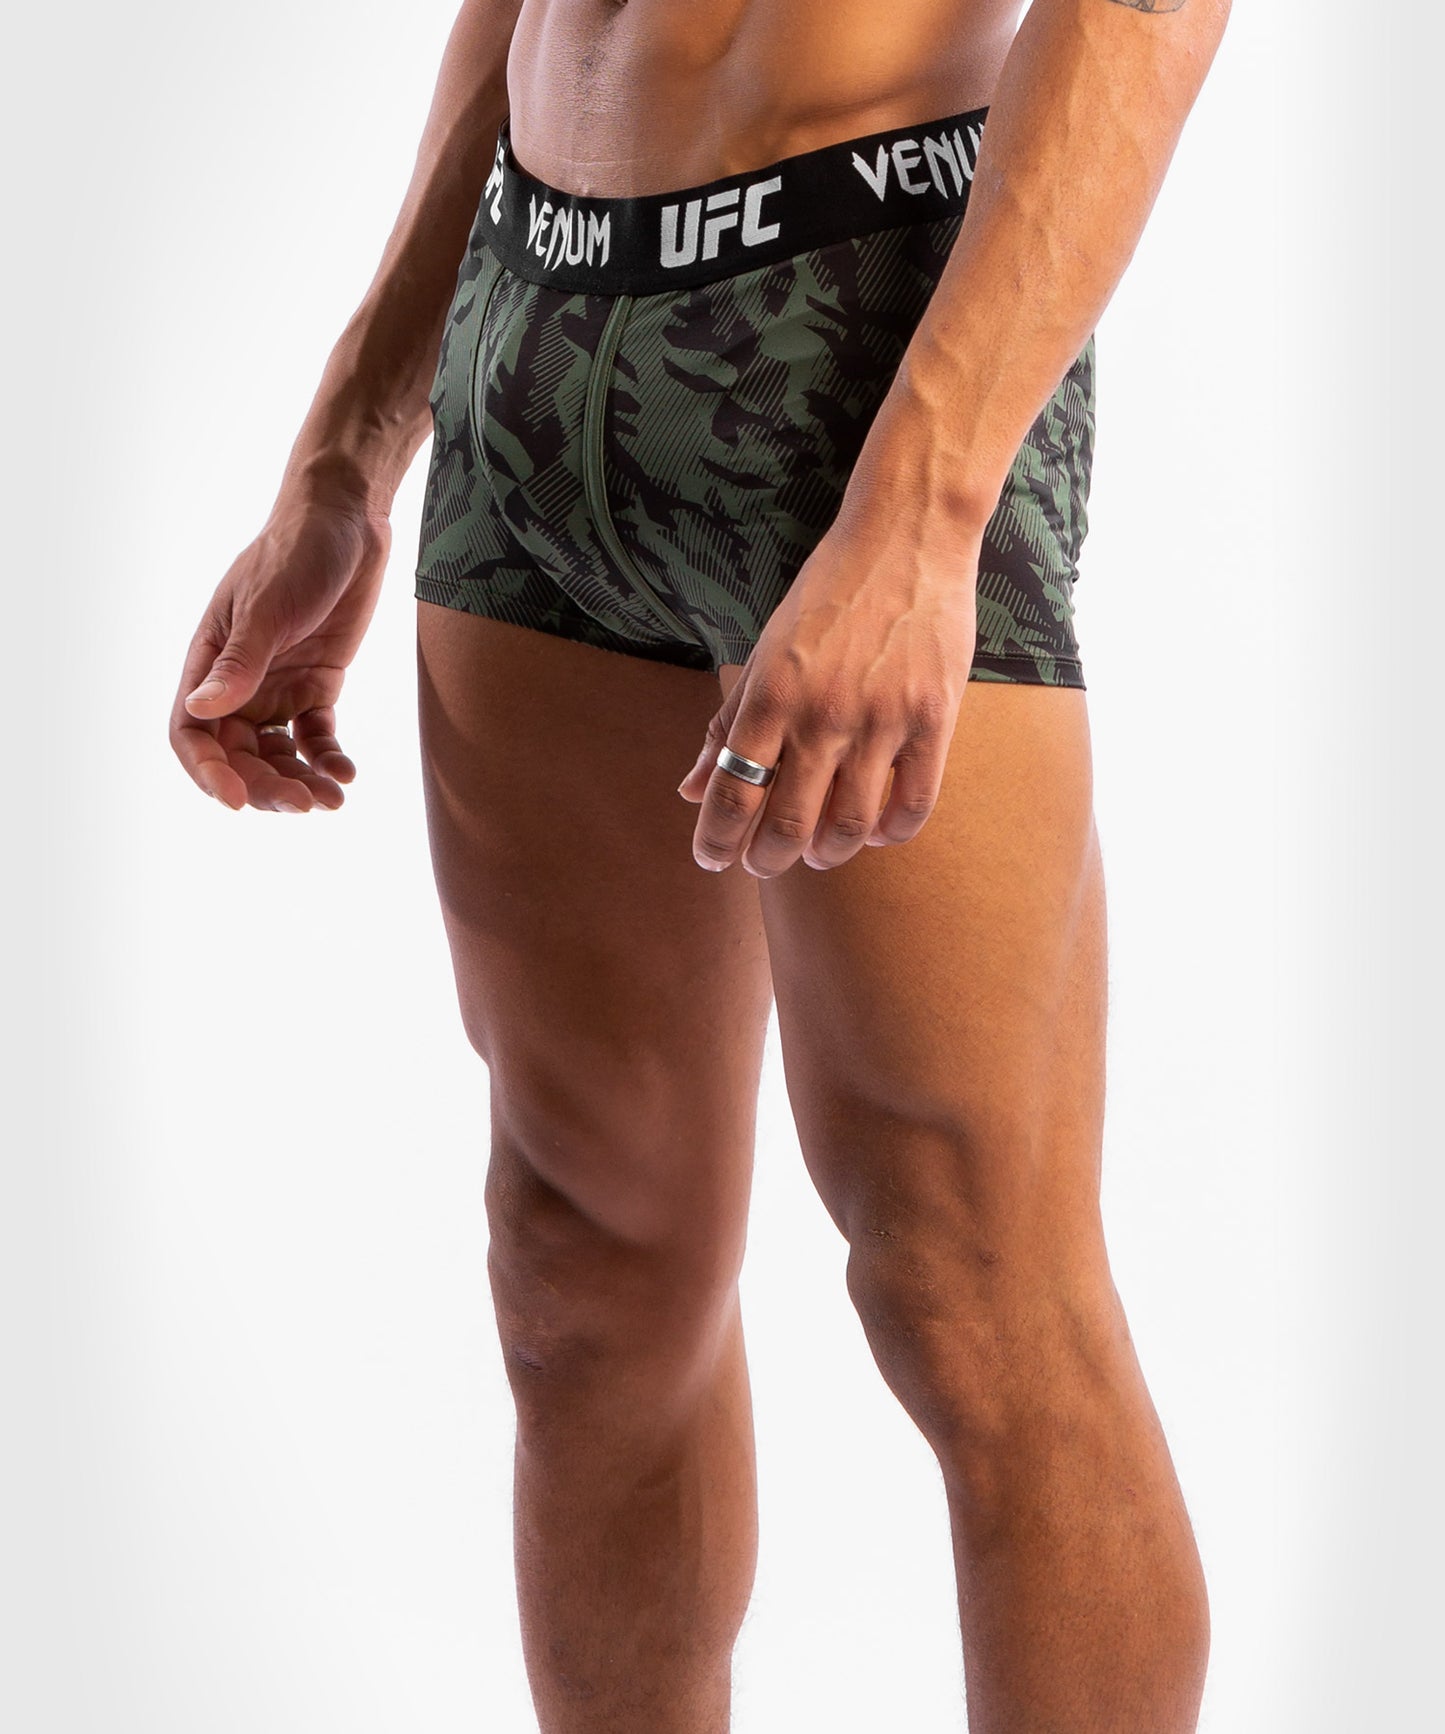 UFC Venum Authentic Fight Week Men's Weigh-in Underwear - Khaki